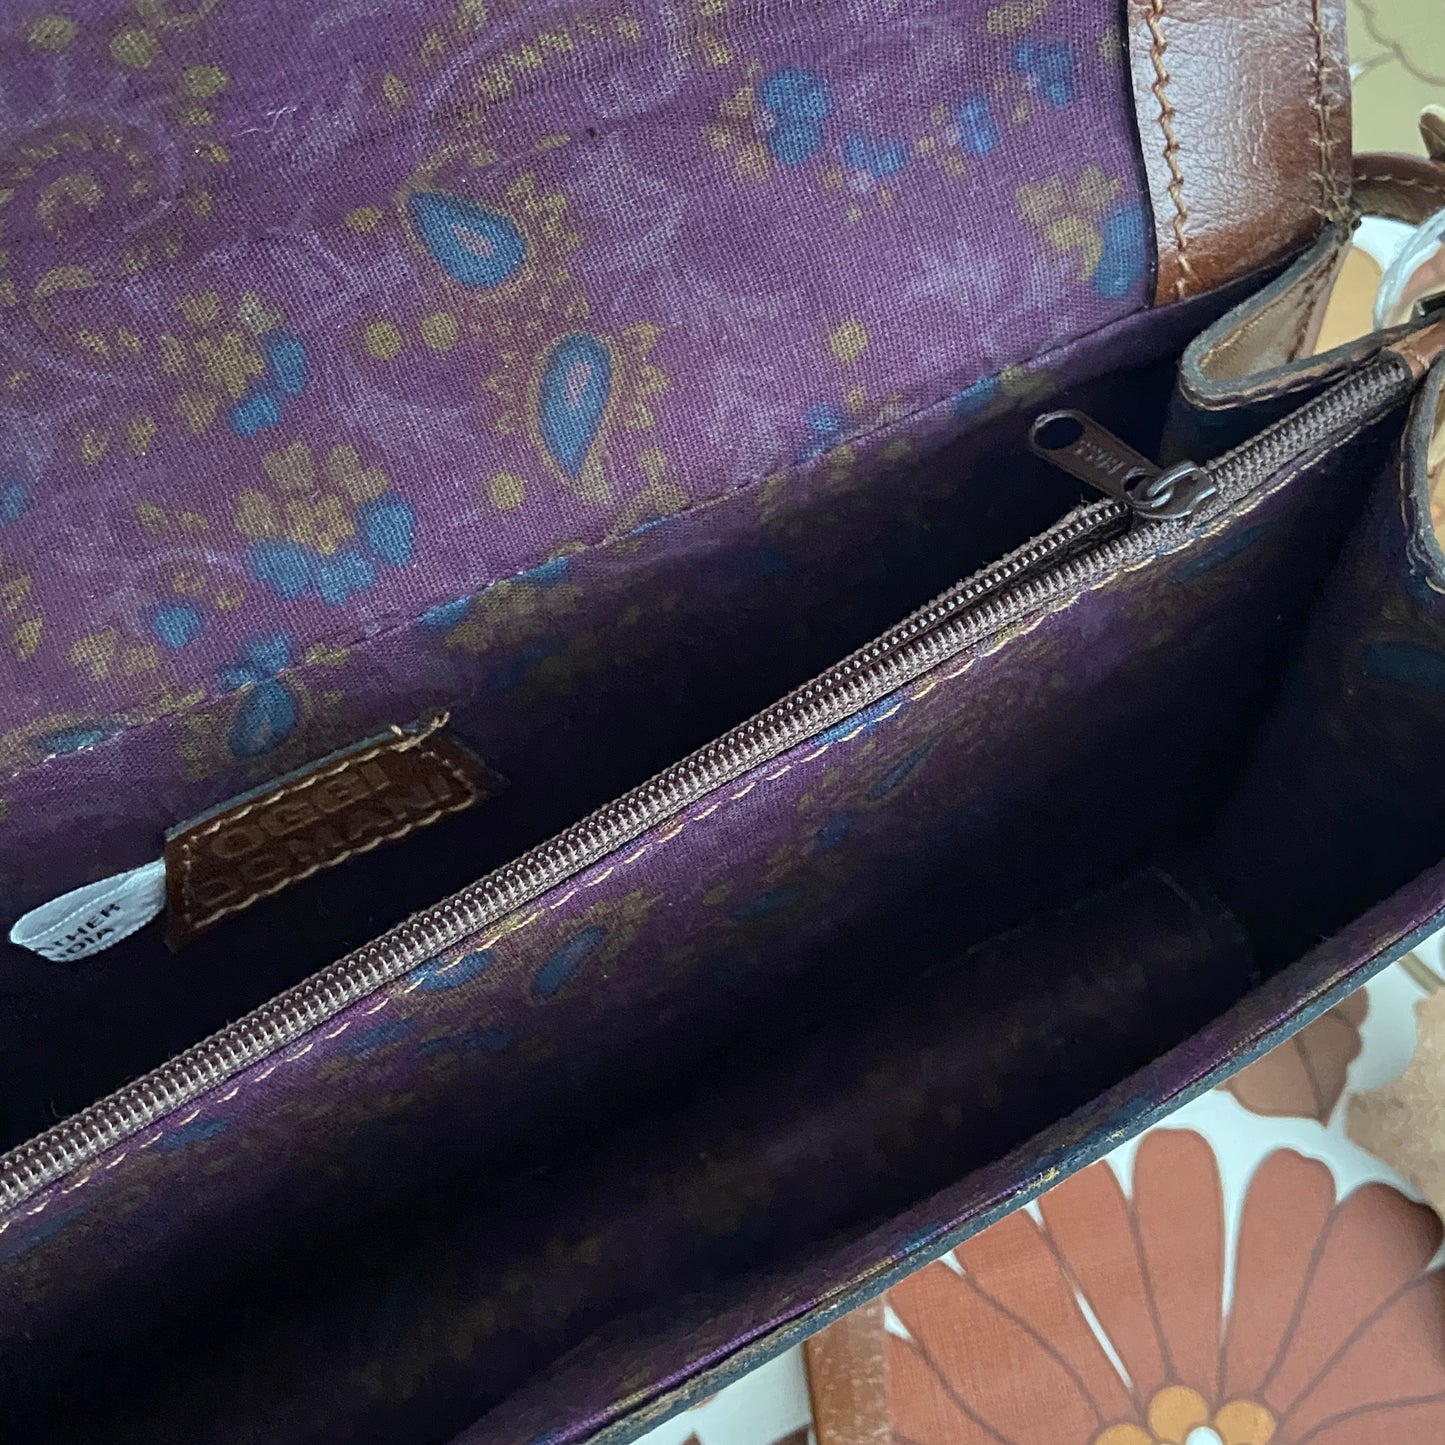 OGGI Domani Vintage Handbag UNUSED Tag LEATHER Paisley Lining